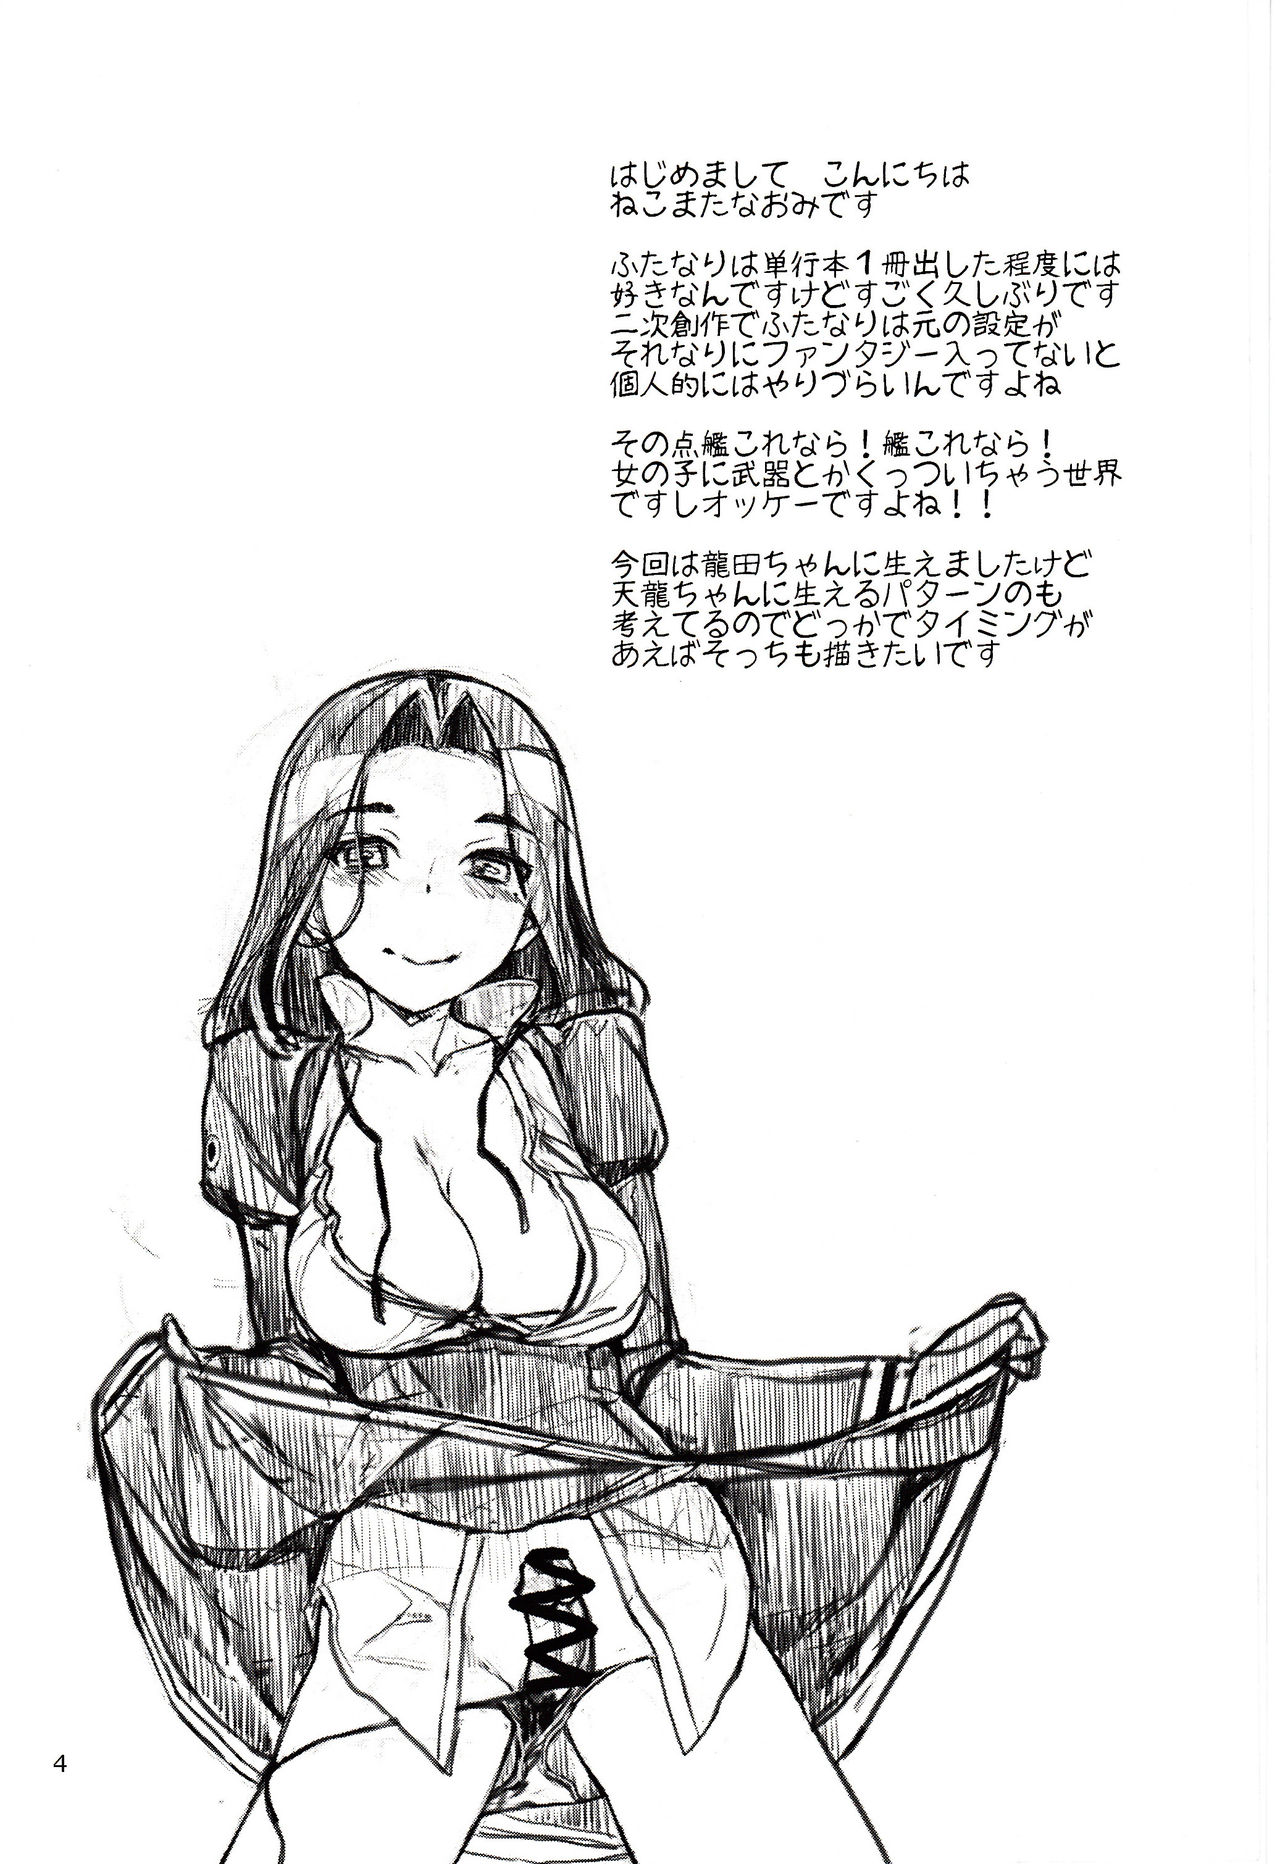 Kuroyuri no Hanakotoba numero d'image 2